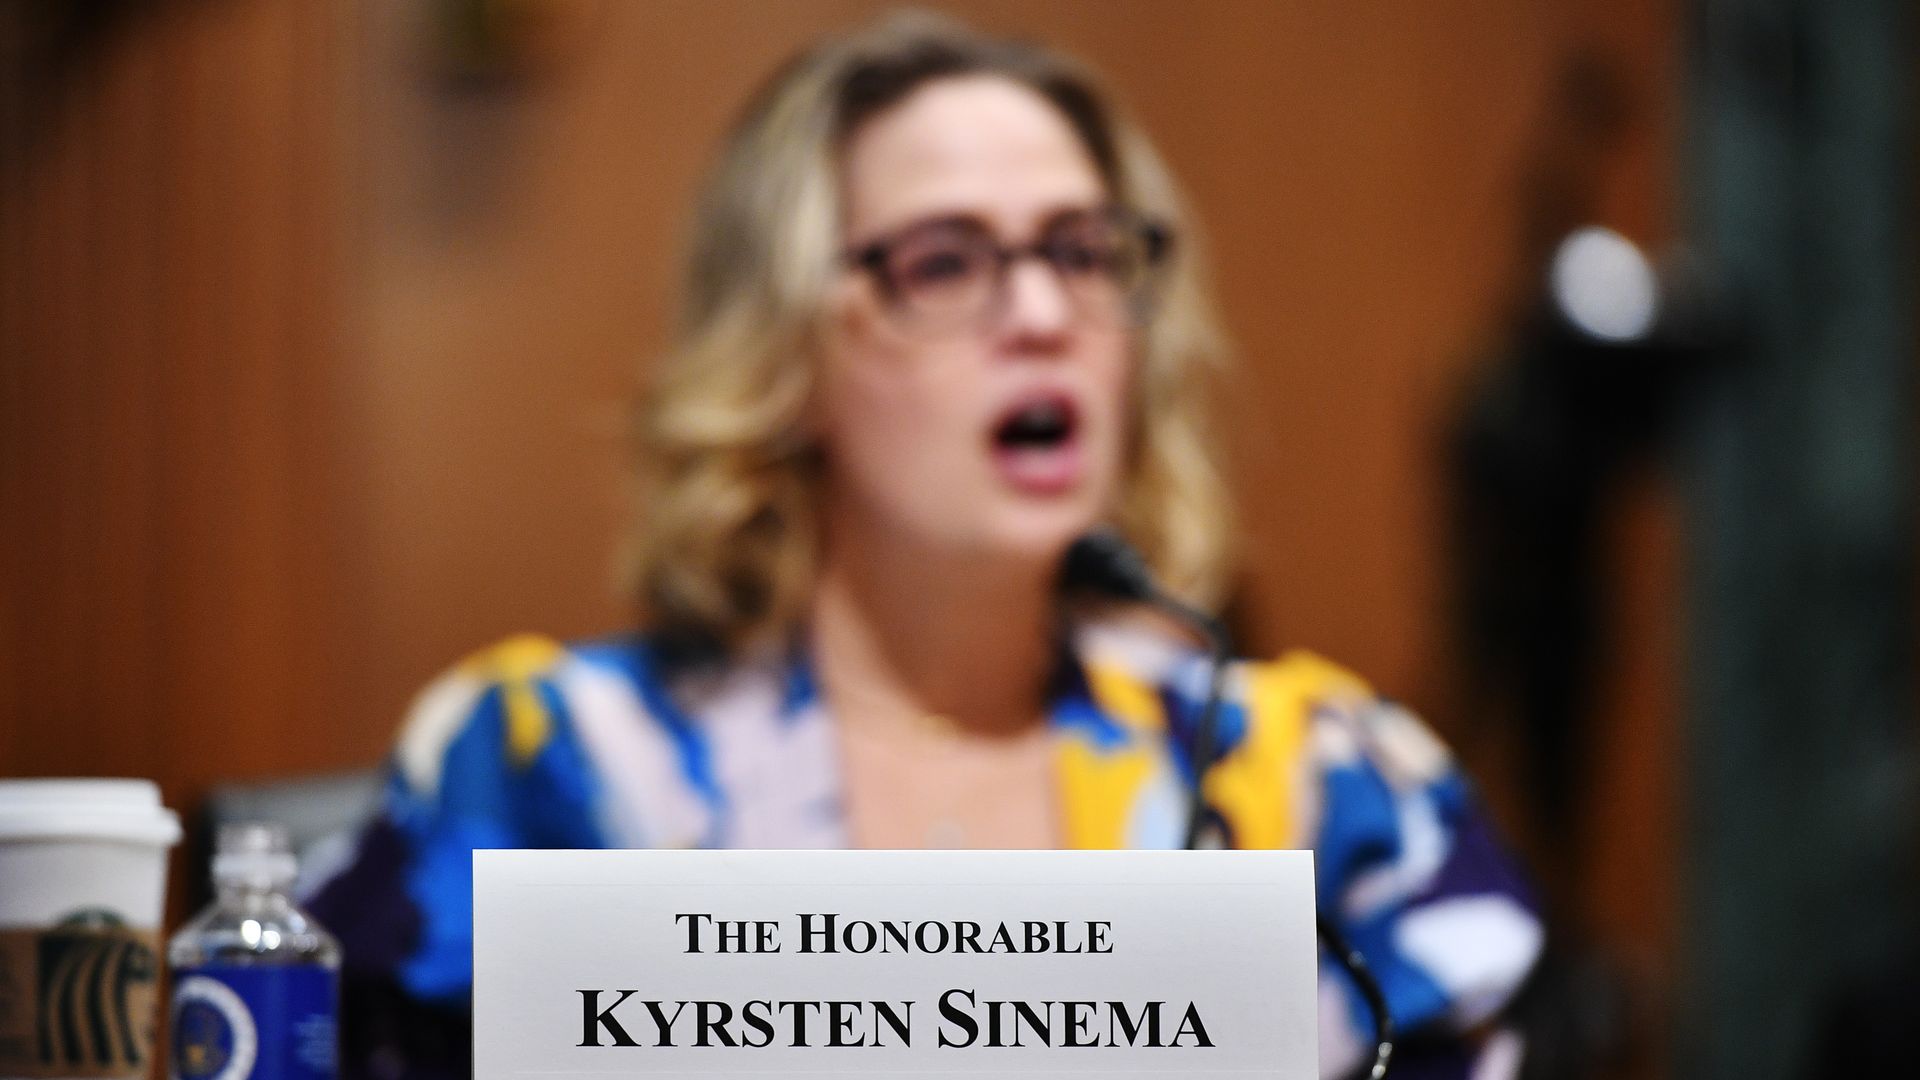 Sen. Kysten Sinema is seen speaking on Tuesday.